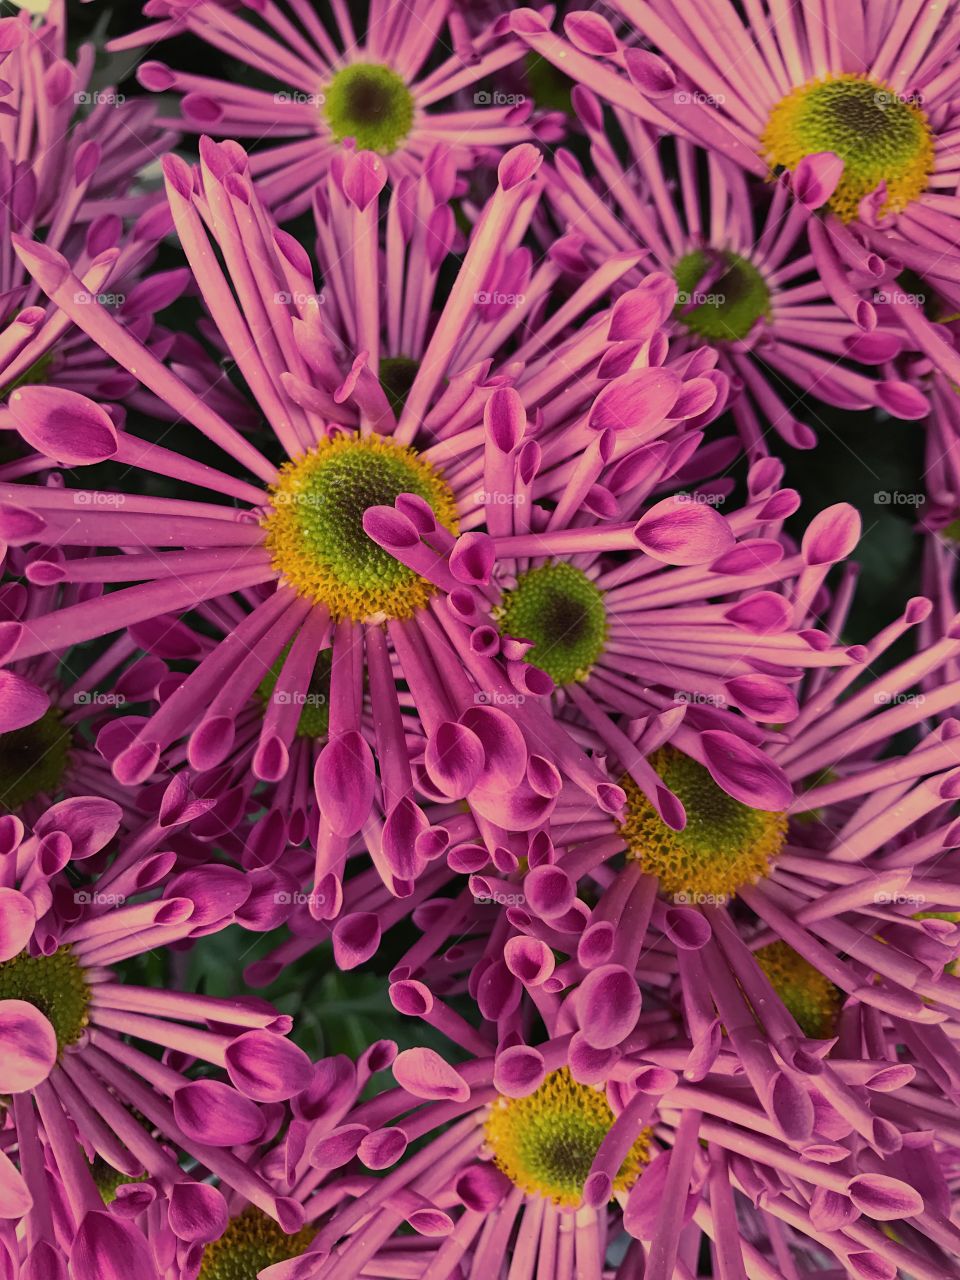 Full farme of pink flower